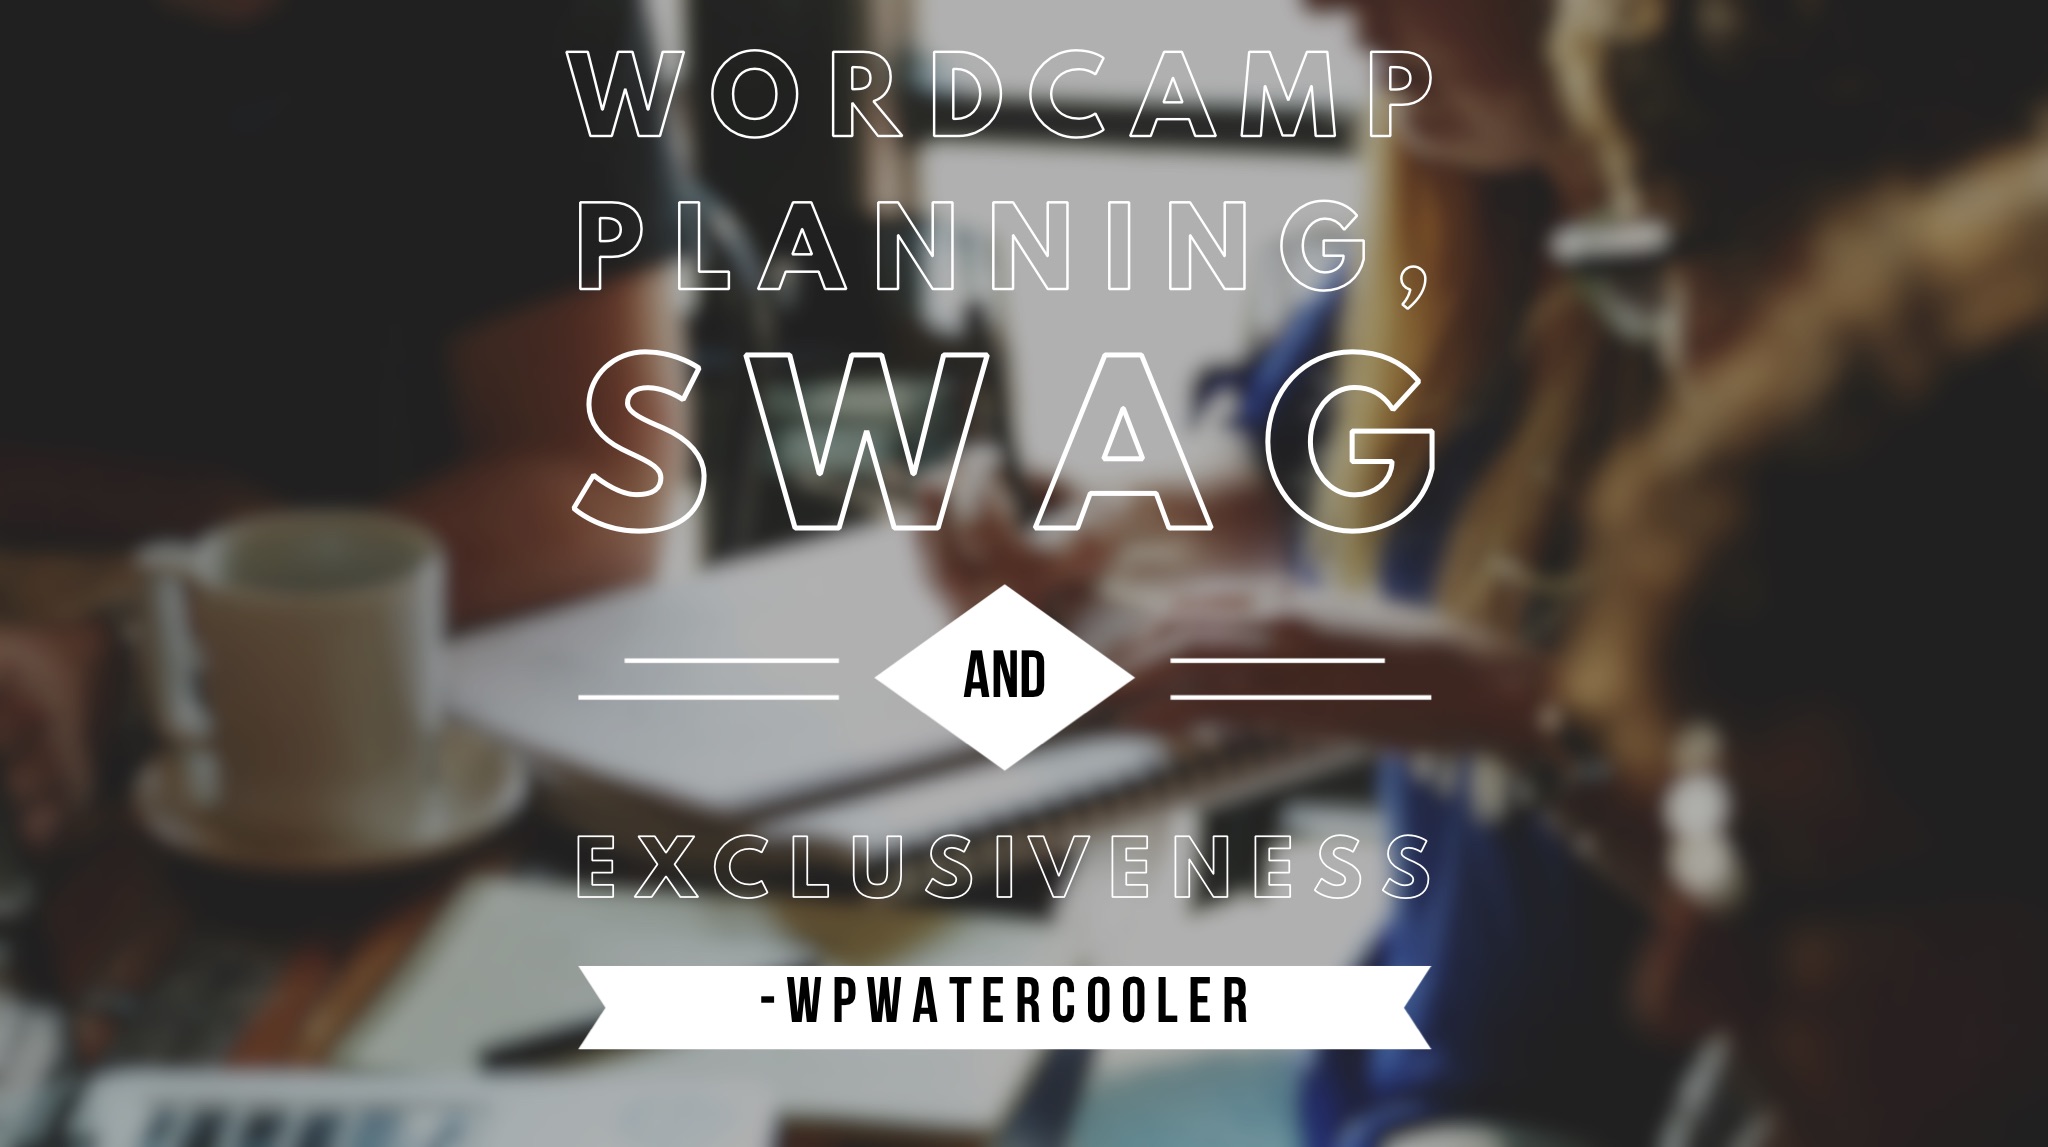 EP265 – WordCamp planning, swag and exclusiveness - WPwatercooler